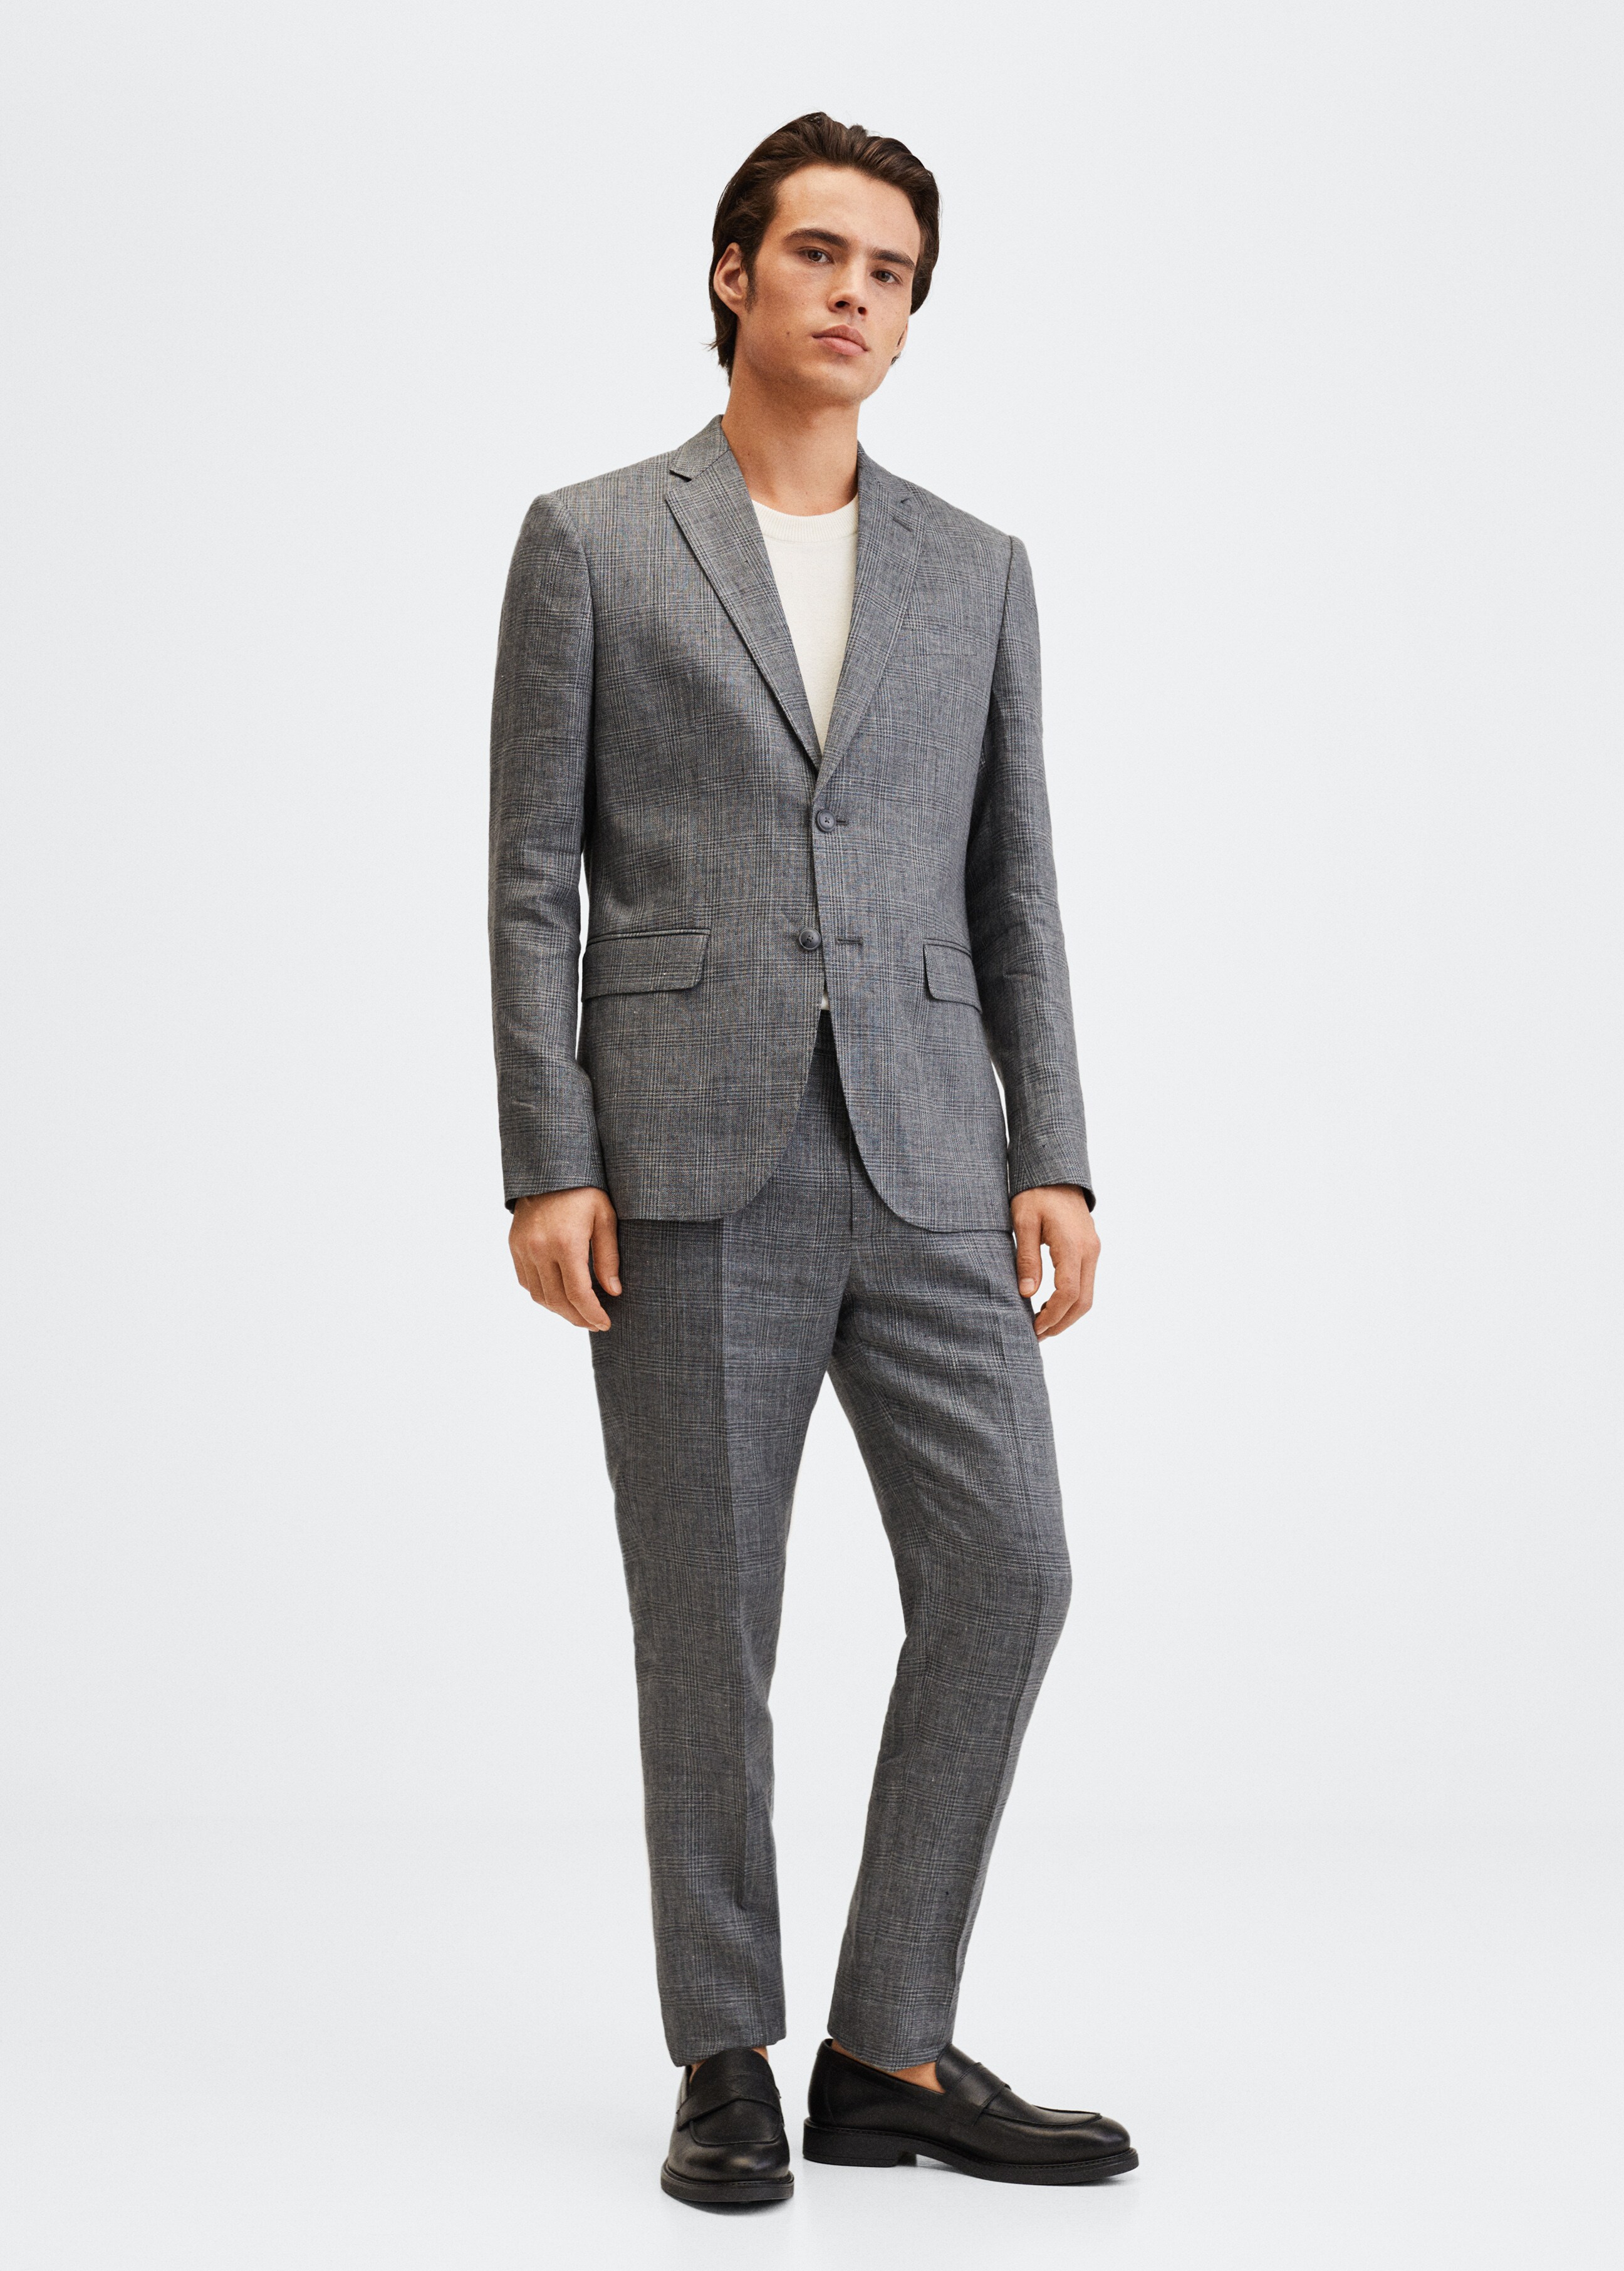  Linen suit trousers - General plane